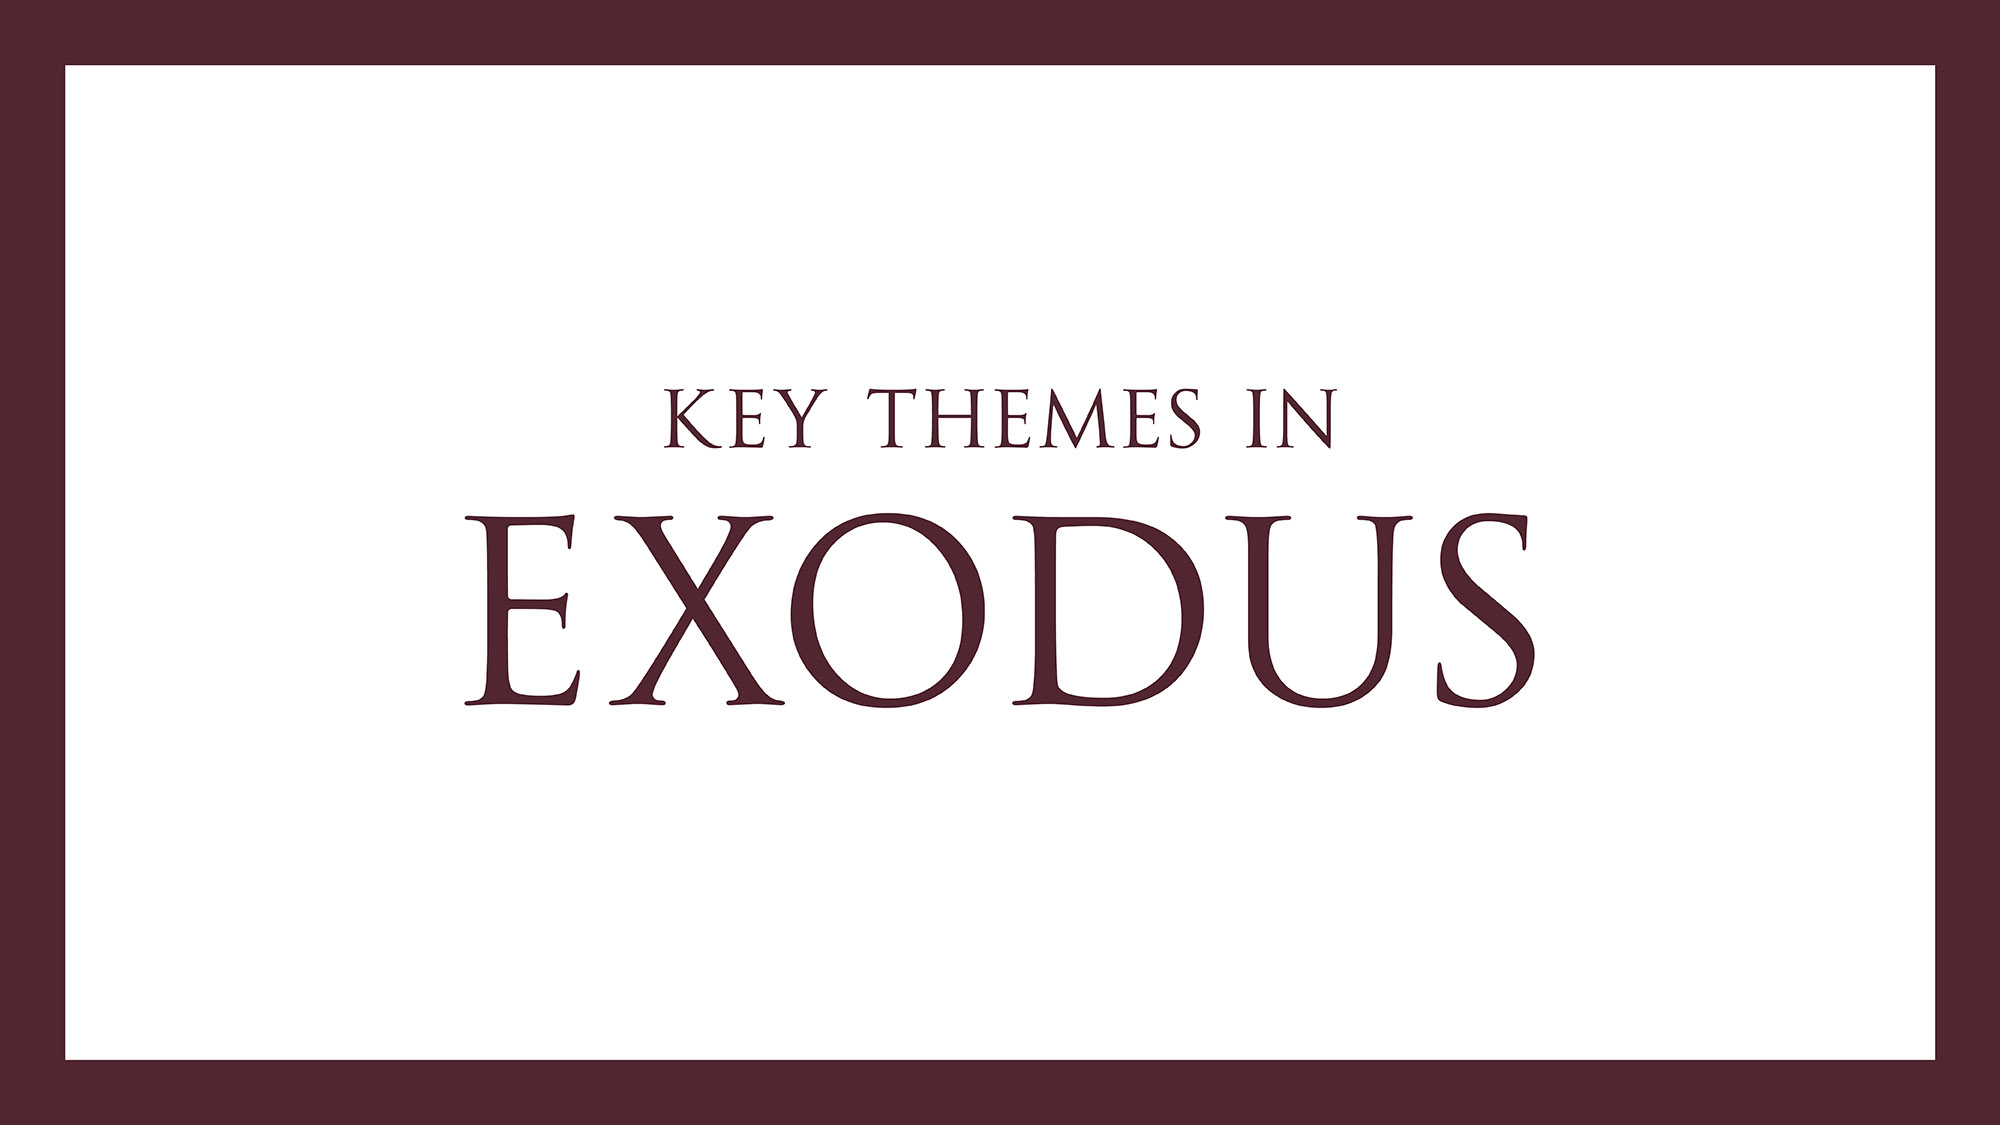 Exodus meaning